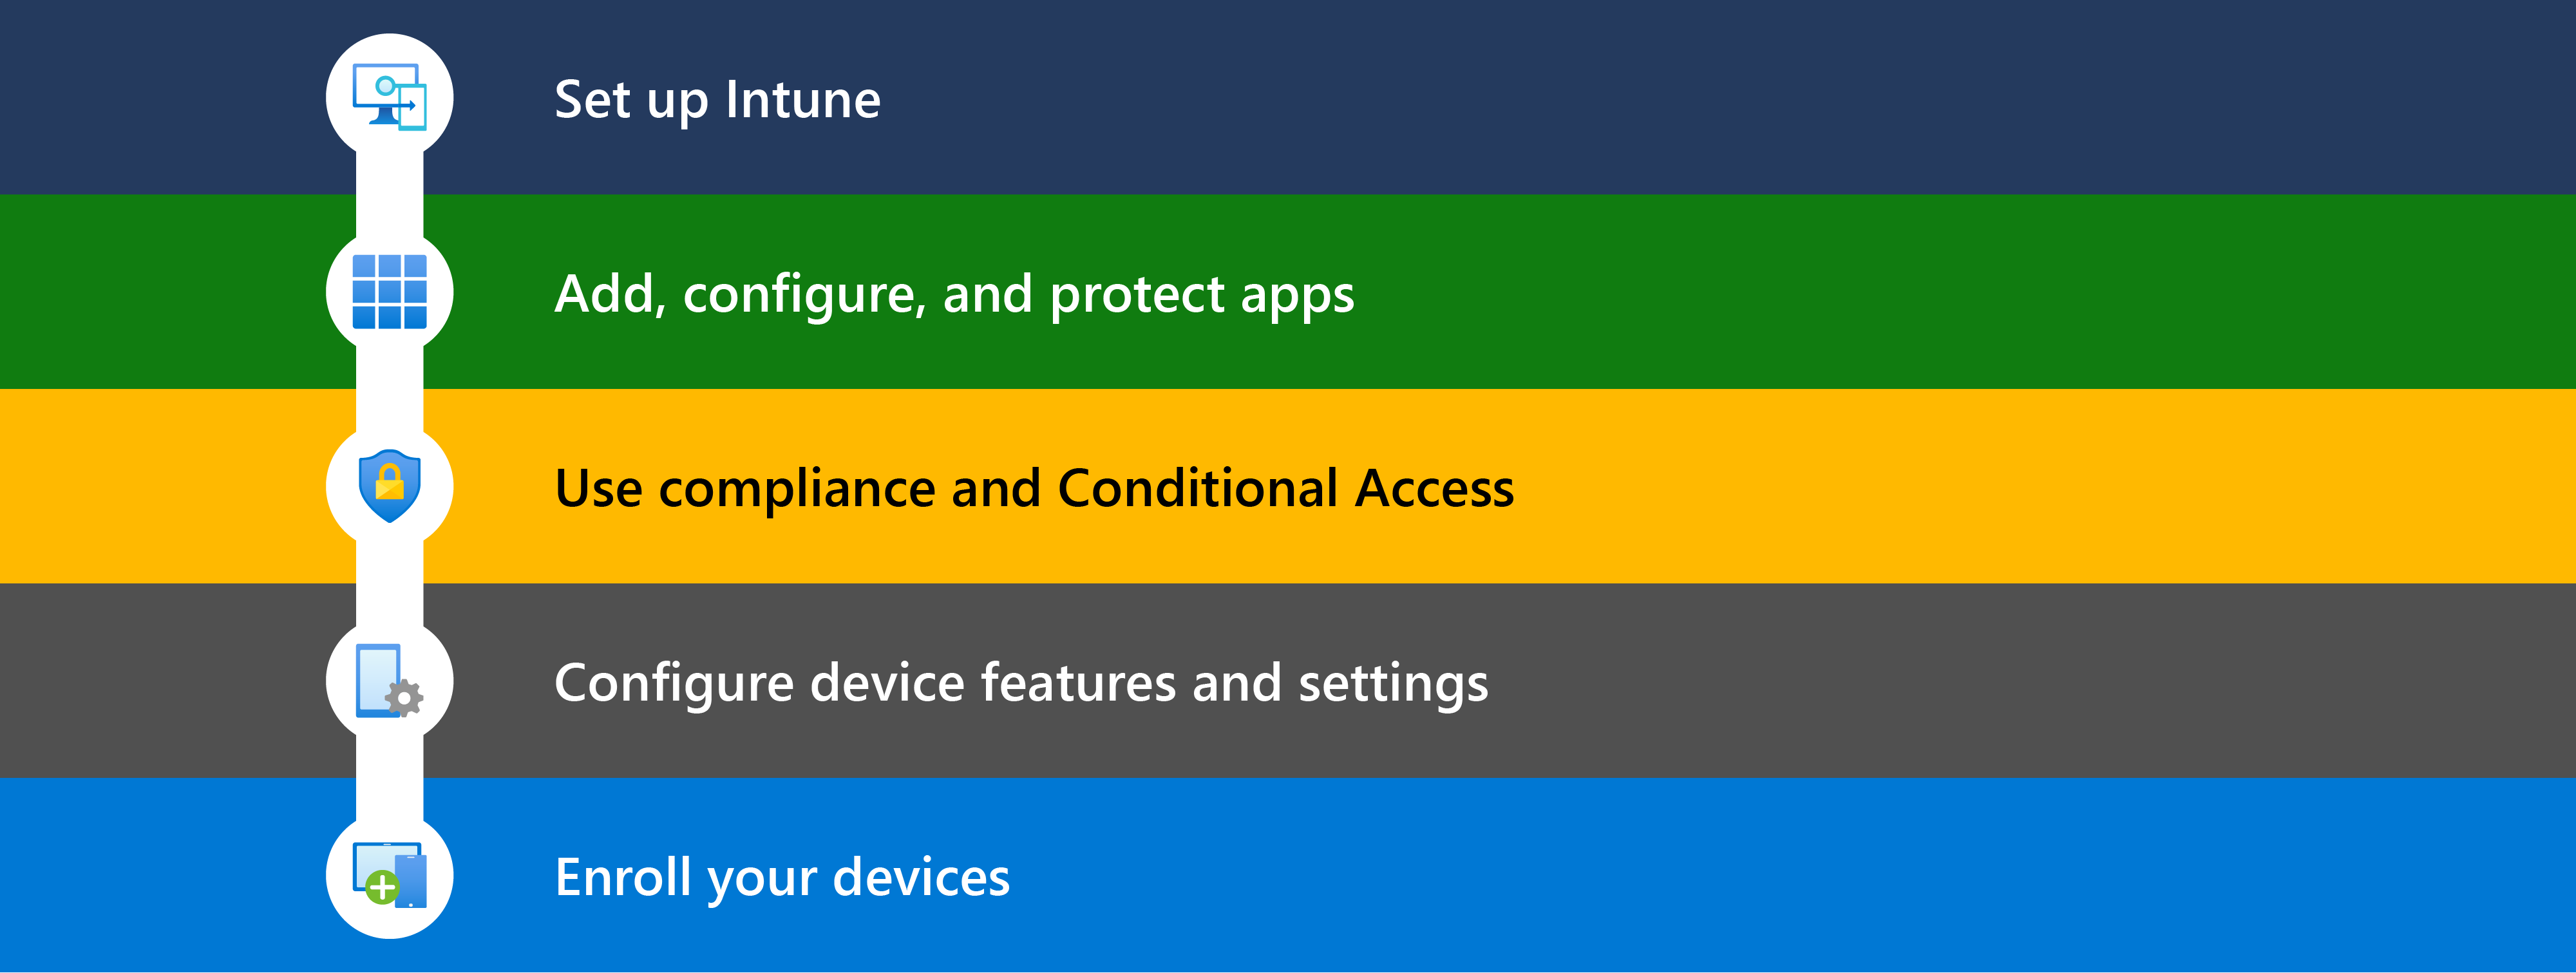 此图显示了开始使用 Microsoft Intune 的不同步骤，包括设置、添加应用、使用符合性 & 条件访问、配置设备功能，以及注册要管理的设备。